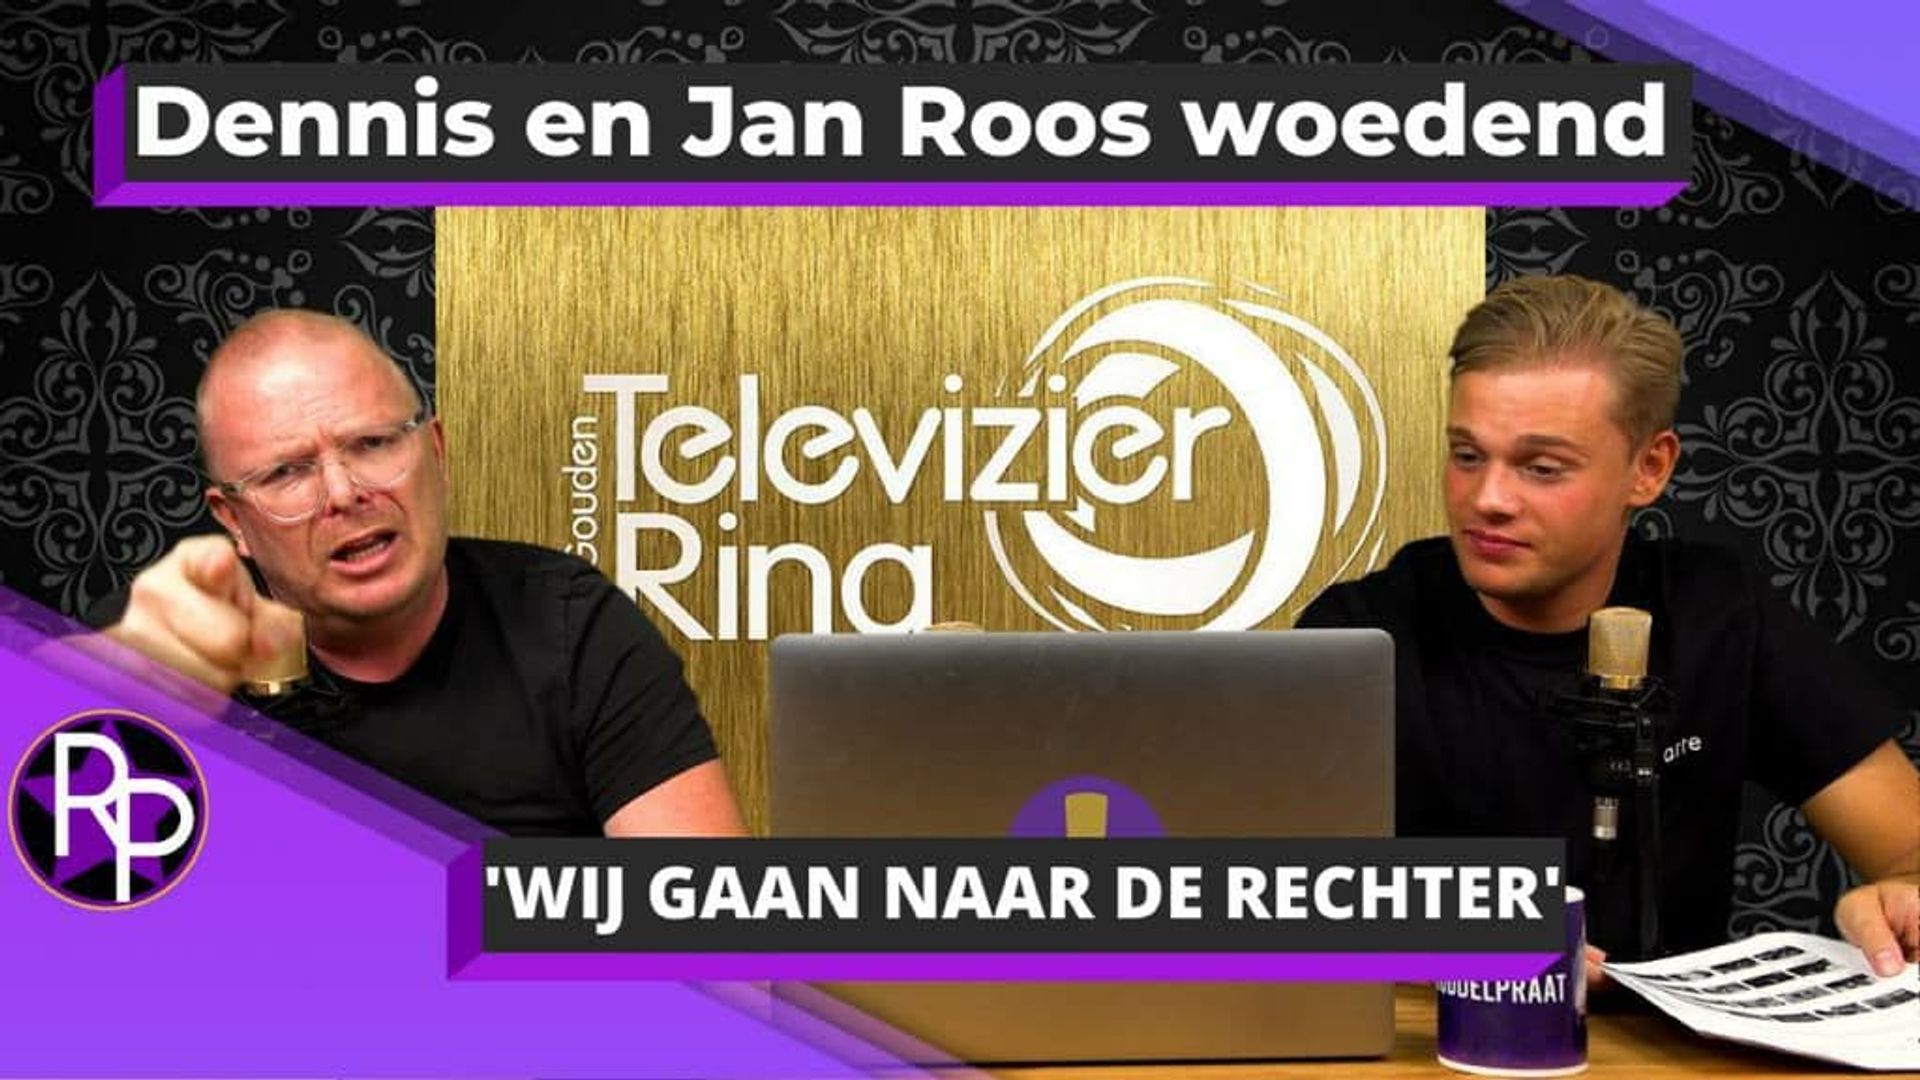 Dennis en Jan Roos Woedend en stappen naar de rechter